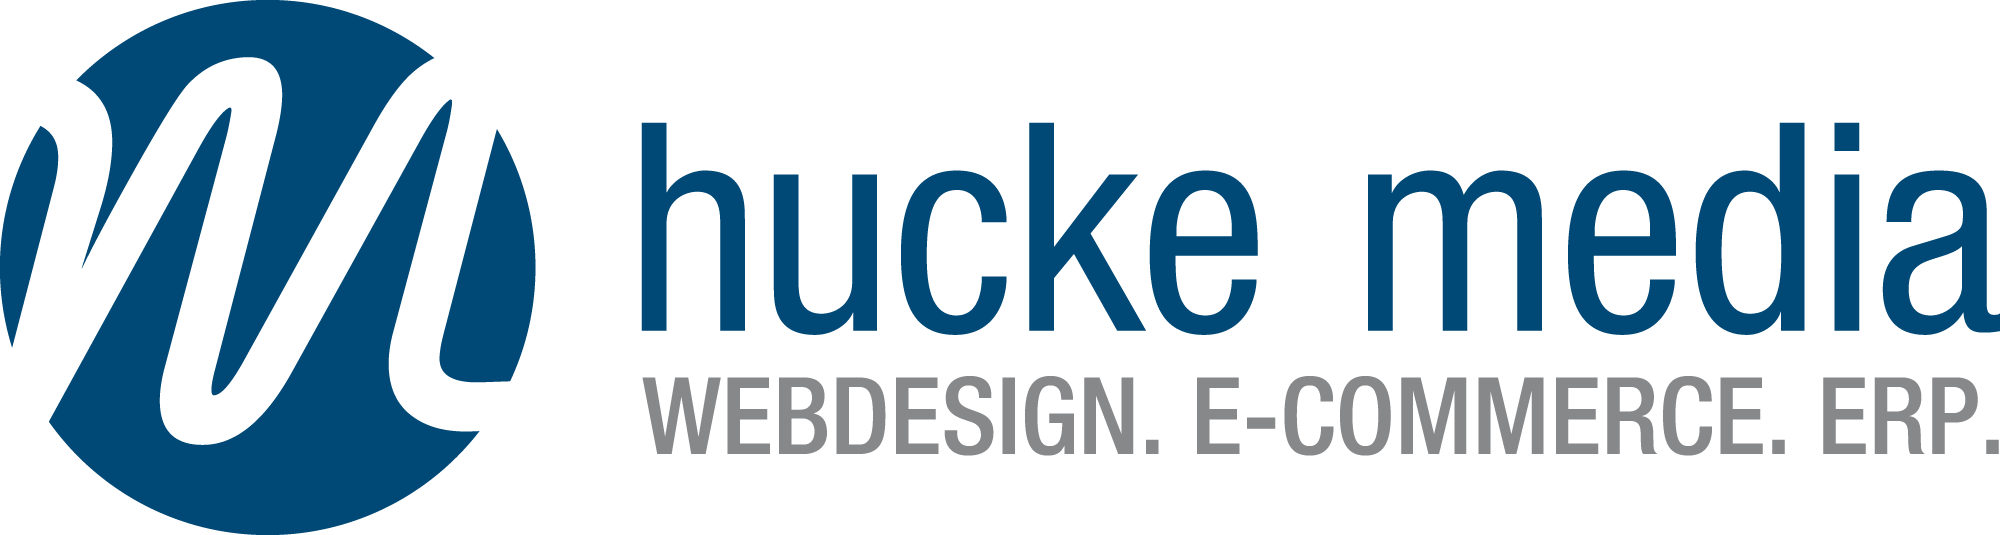 Hucke Media GmbH & Co. KG